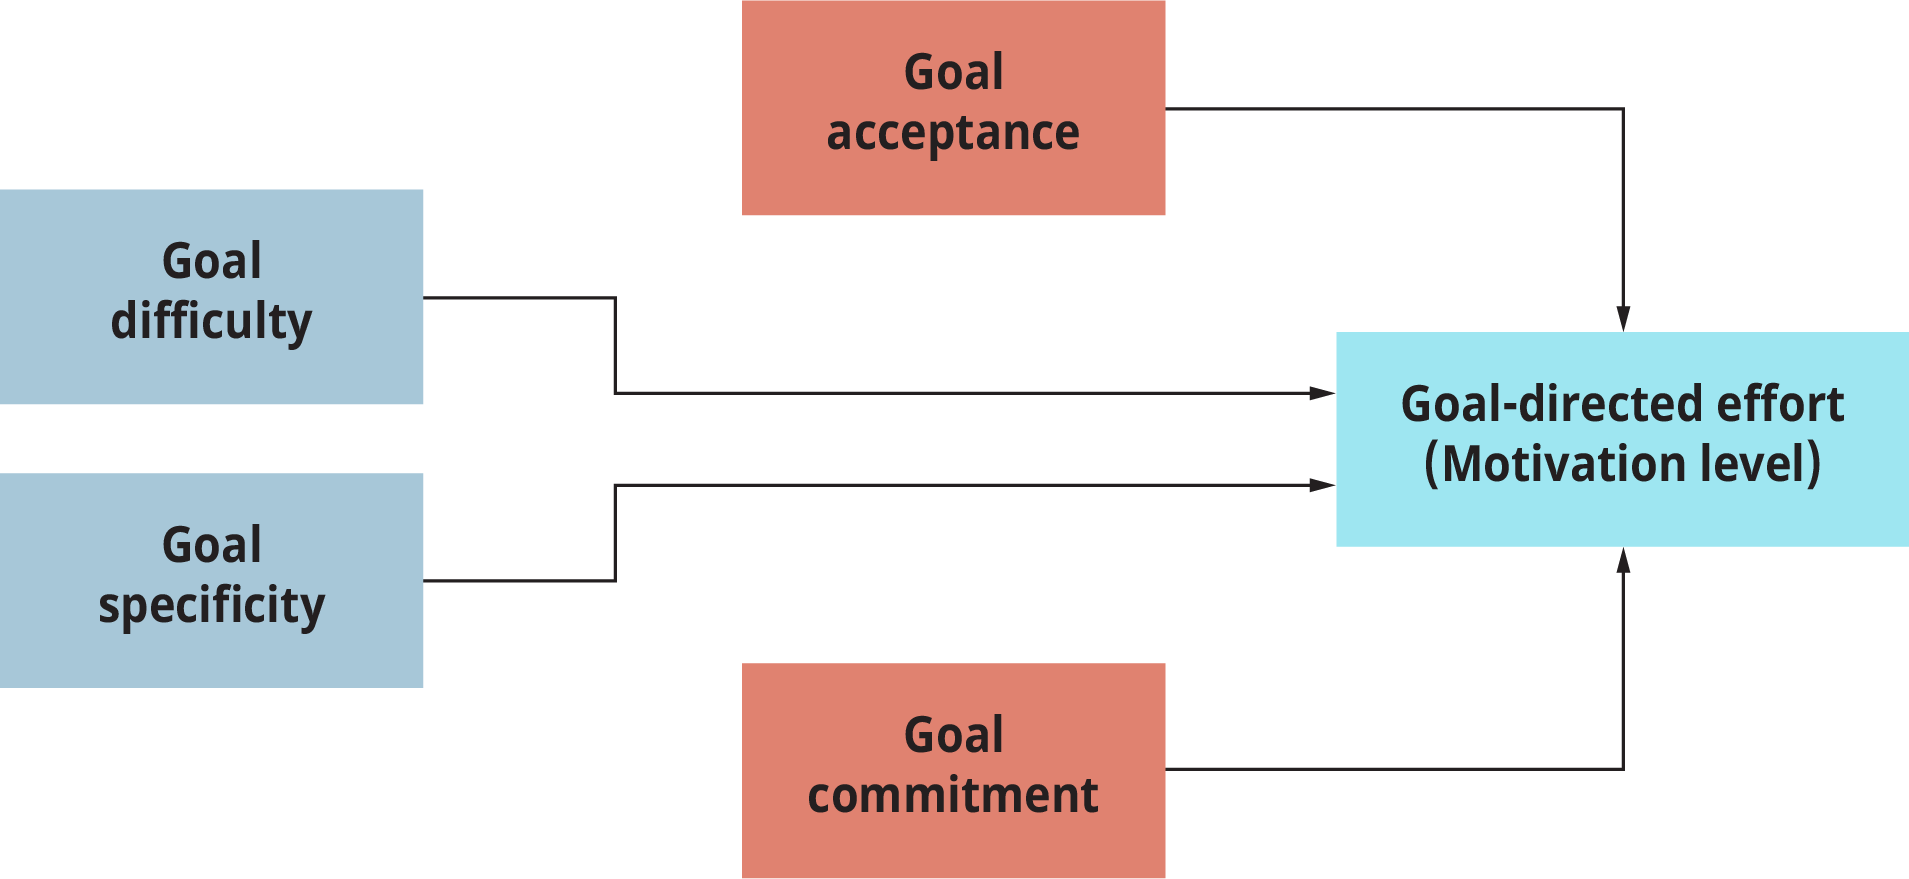 Un modelo de establecimiento de metas representa las condiciones necesarias para maximizar el esfuerzo dirigido a objetivos.